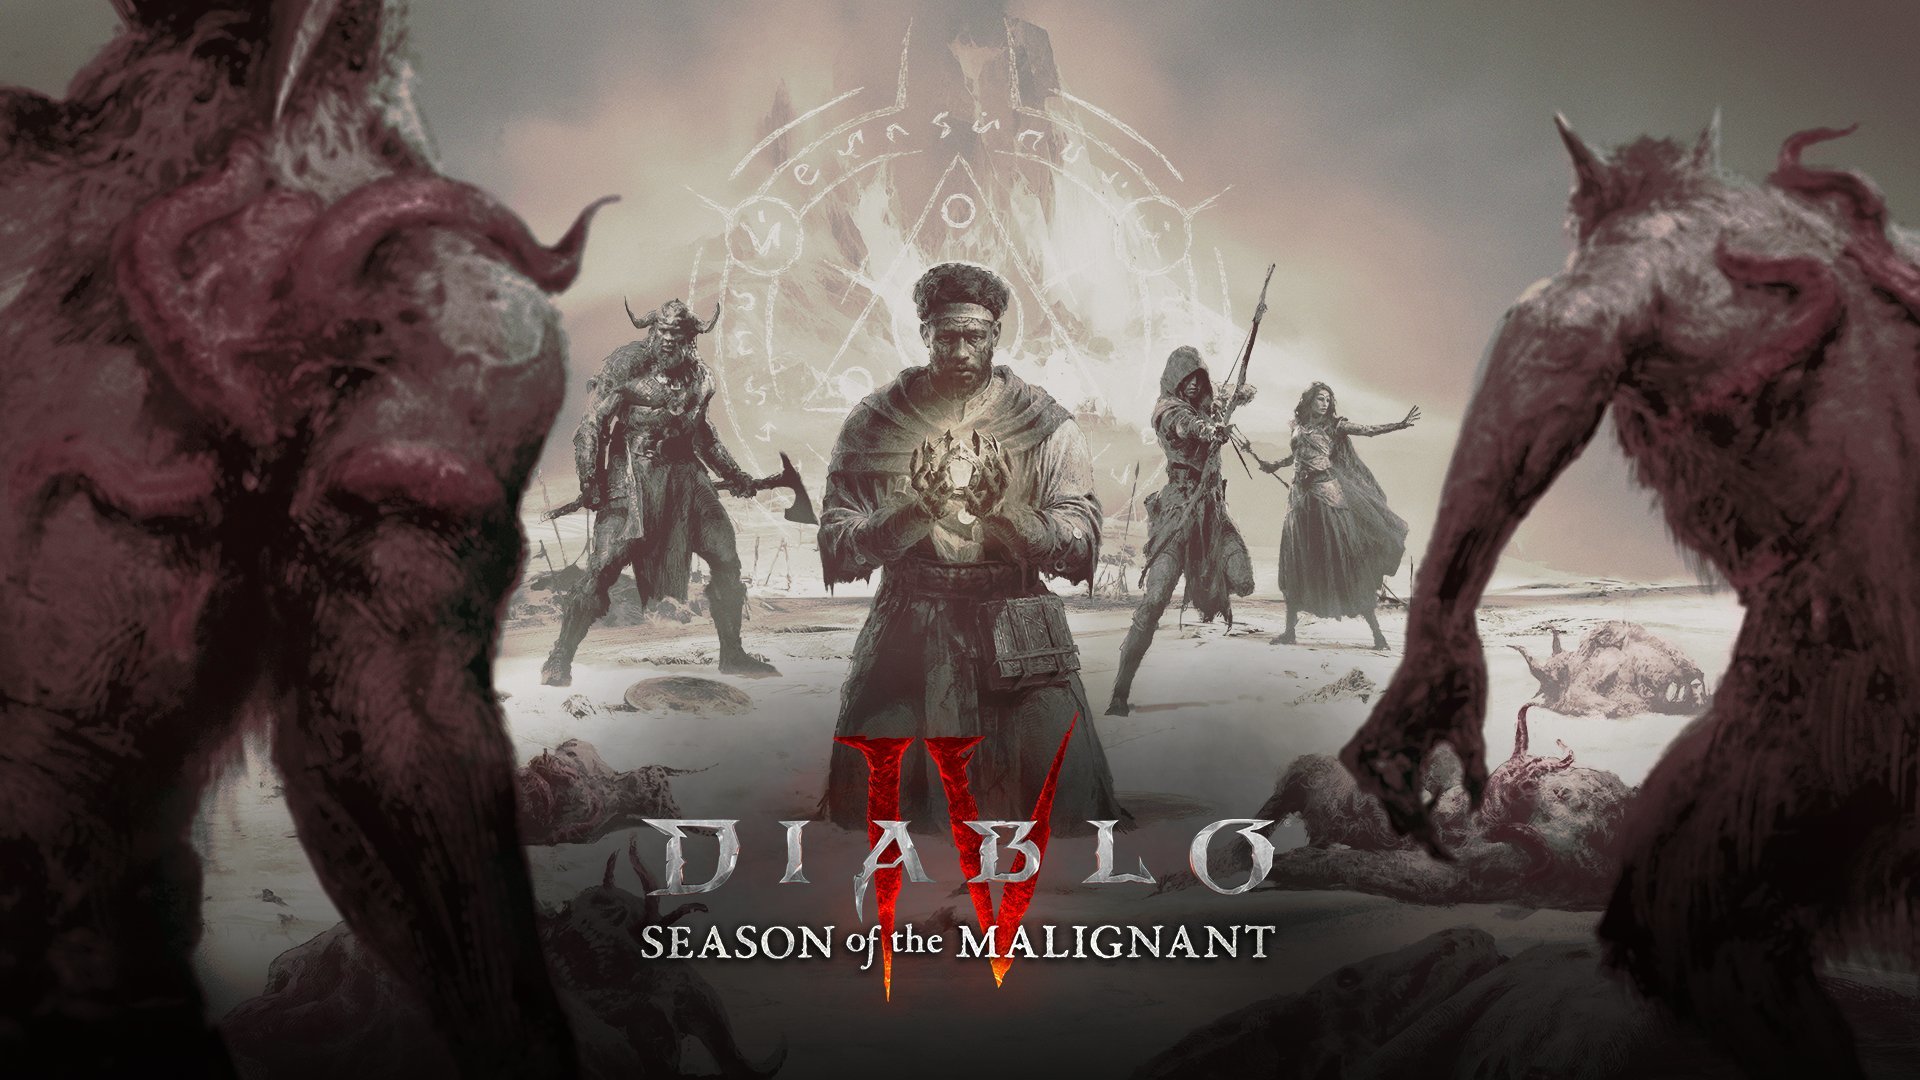 Diablo IV otterrà nuovo equipaggiamento, nuovi nemici e altro ancora quando la Stagione 1 verrà lanciata tra due settimane